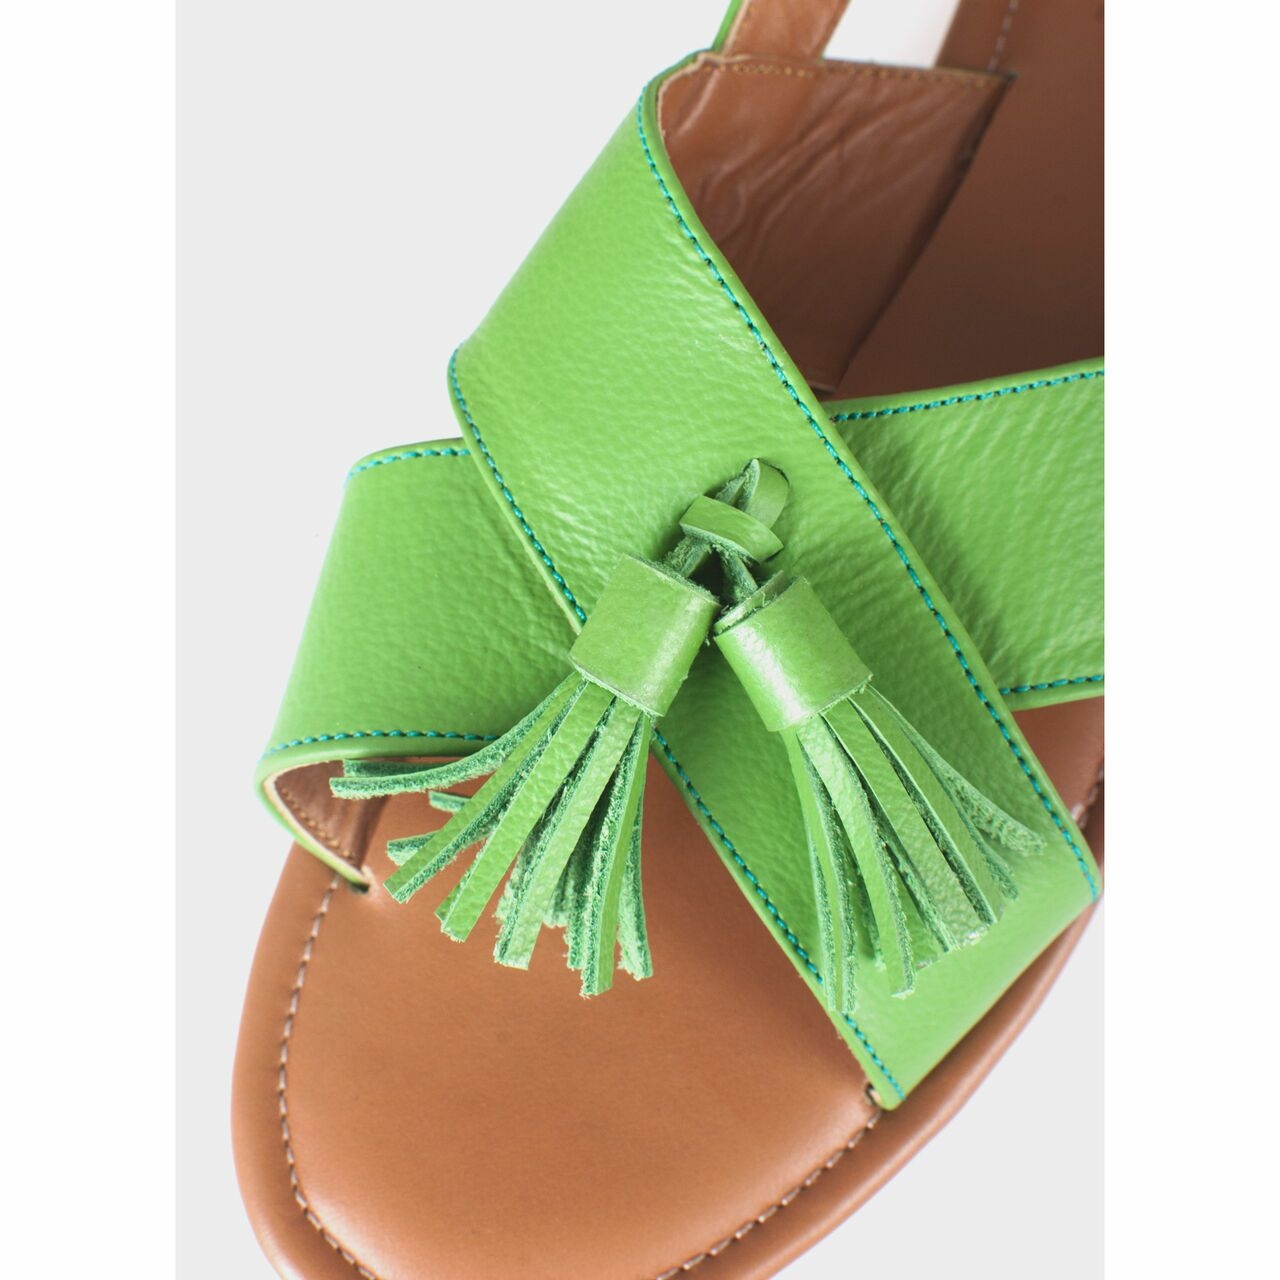 Aschas Light Green Sandals